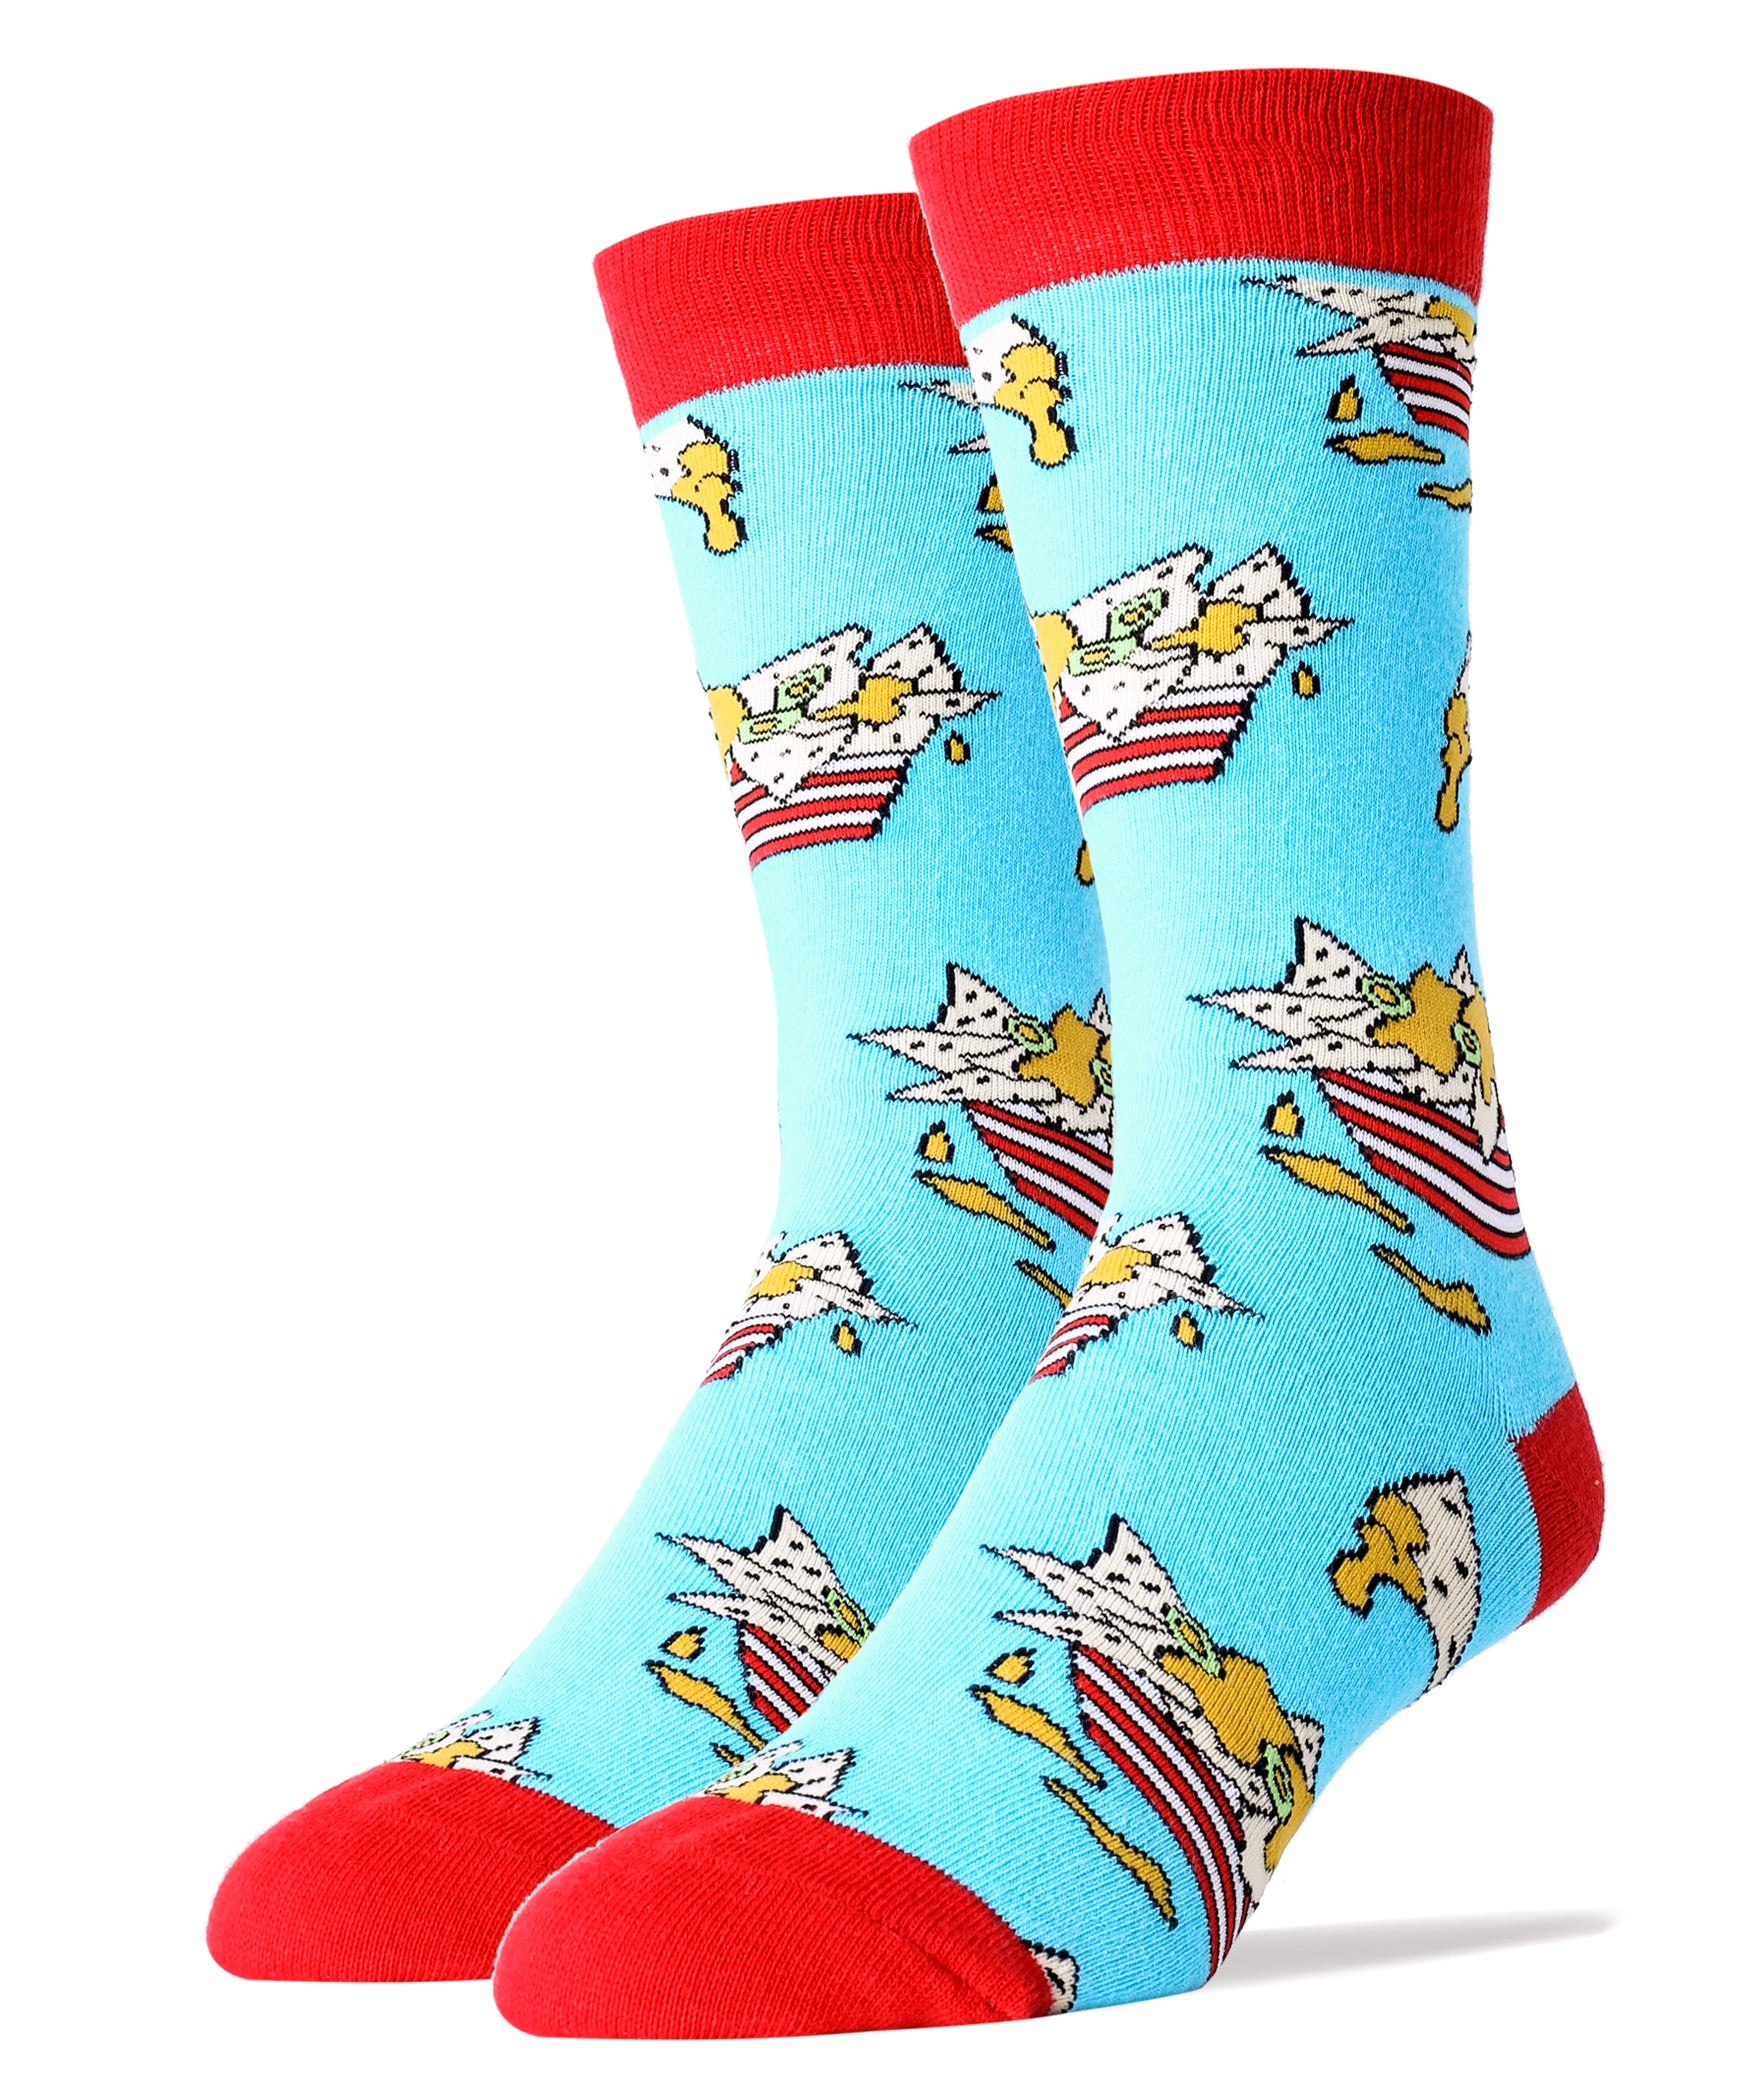 Nachos Socks | Novelty Crew Socks For Men